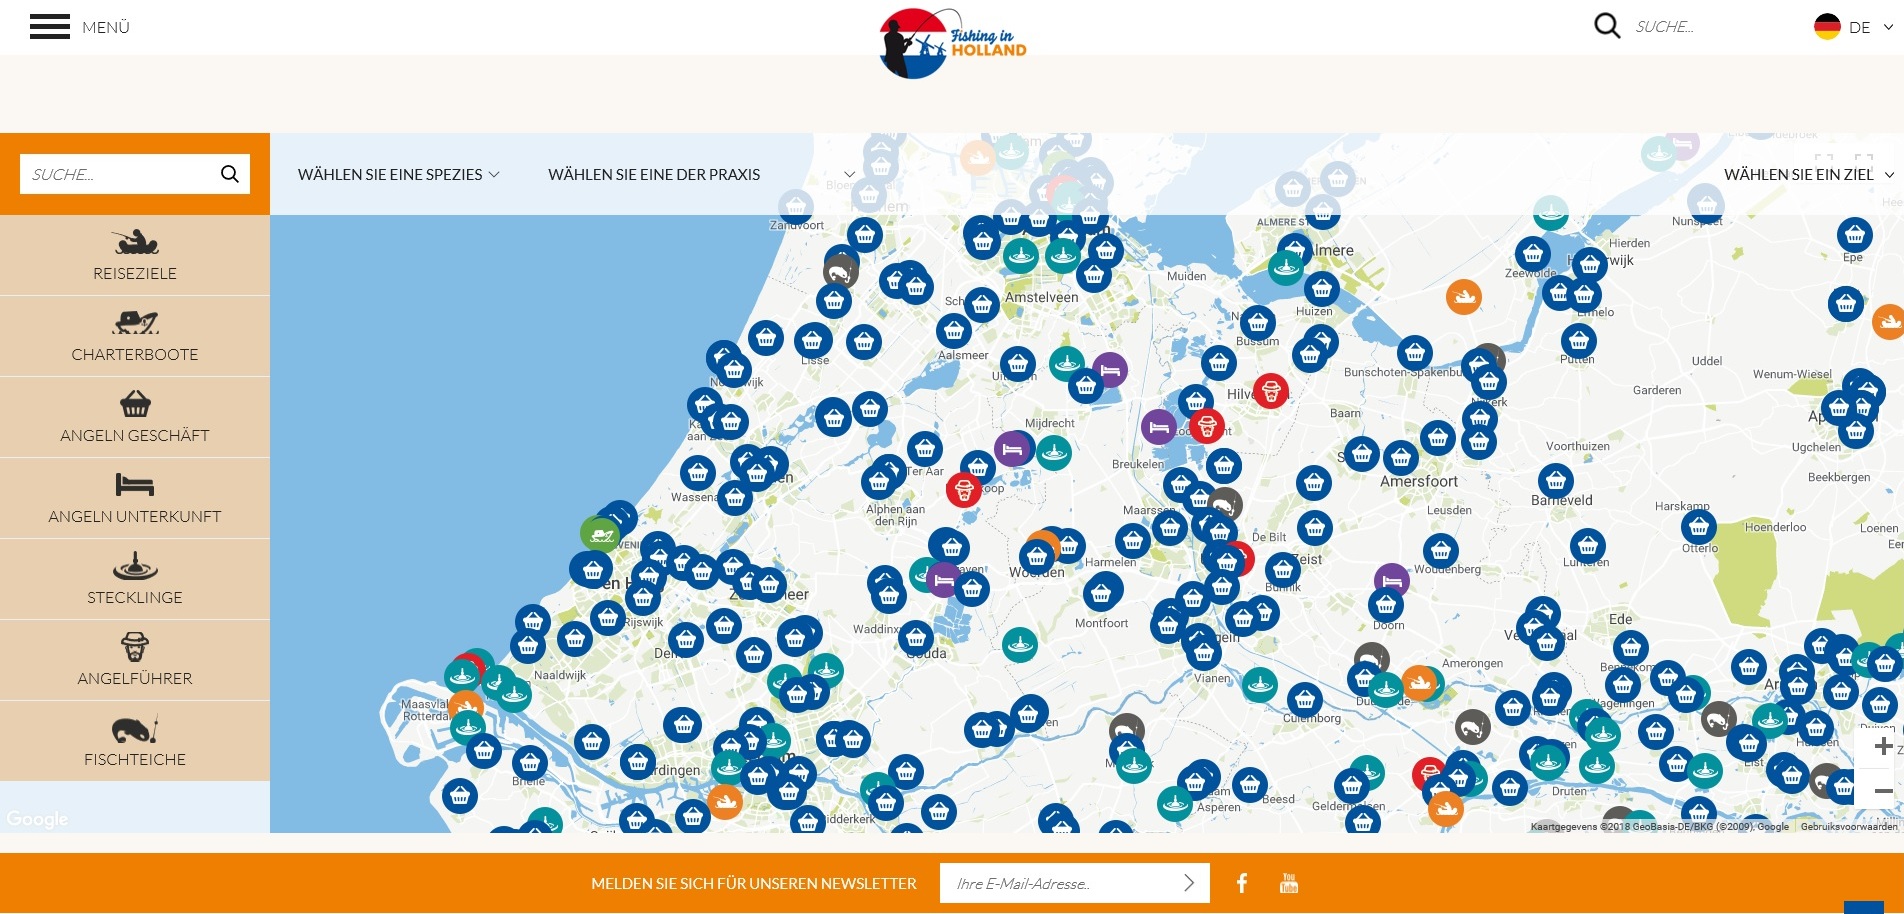 Auf www.fishinginholland.nl findet Ihr eine Karte mit den heißen Spots rund um das Angeln in Holland. Grafik: Google/fishinginholland.nl